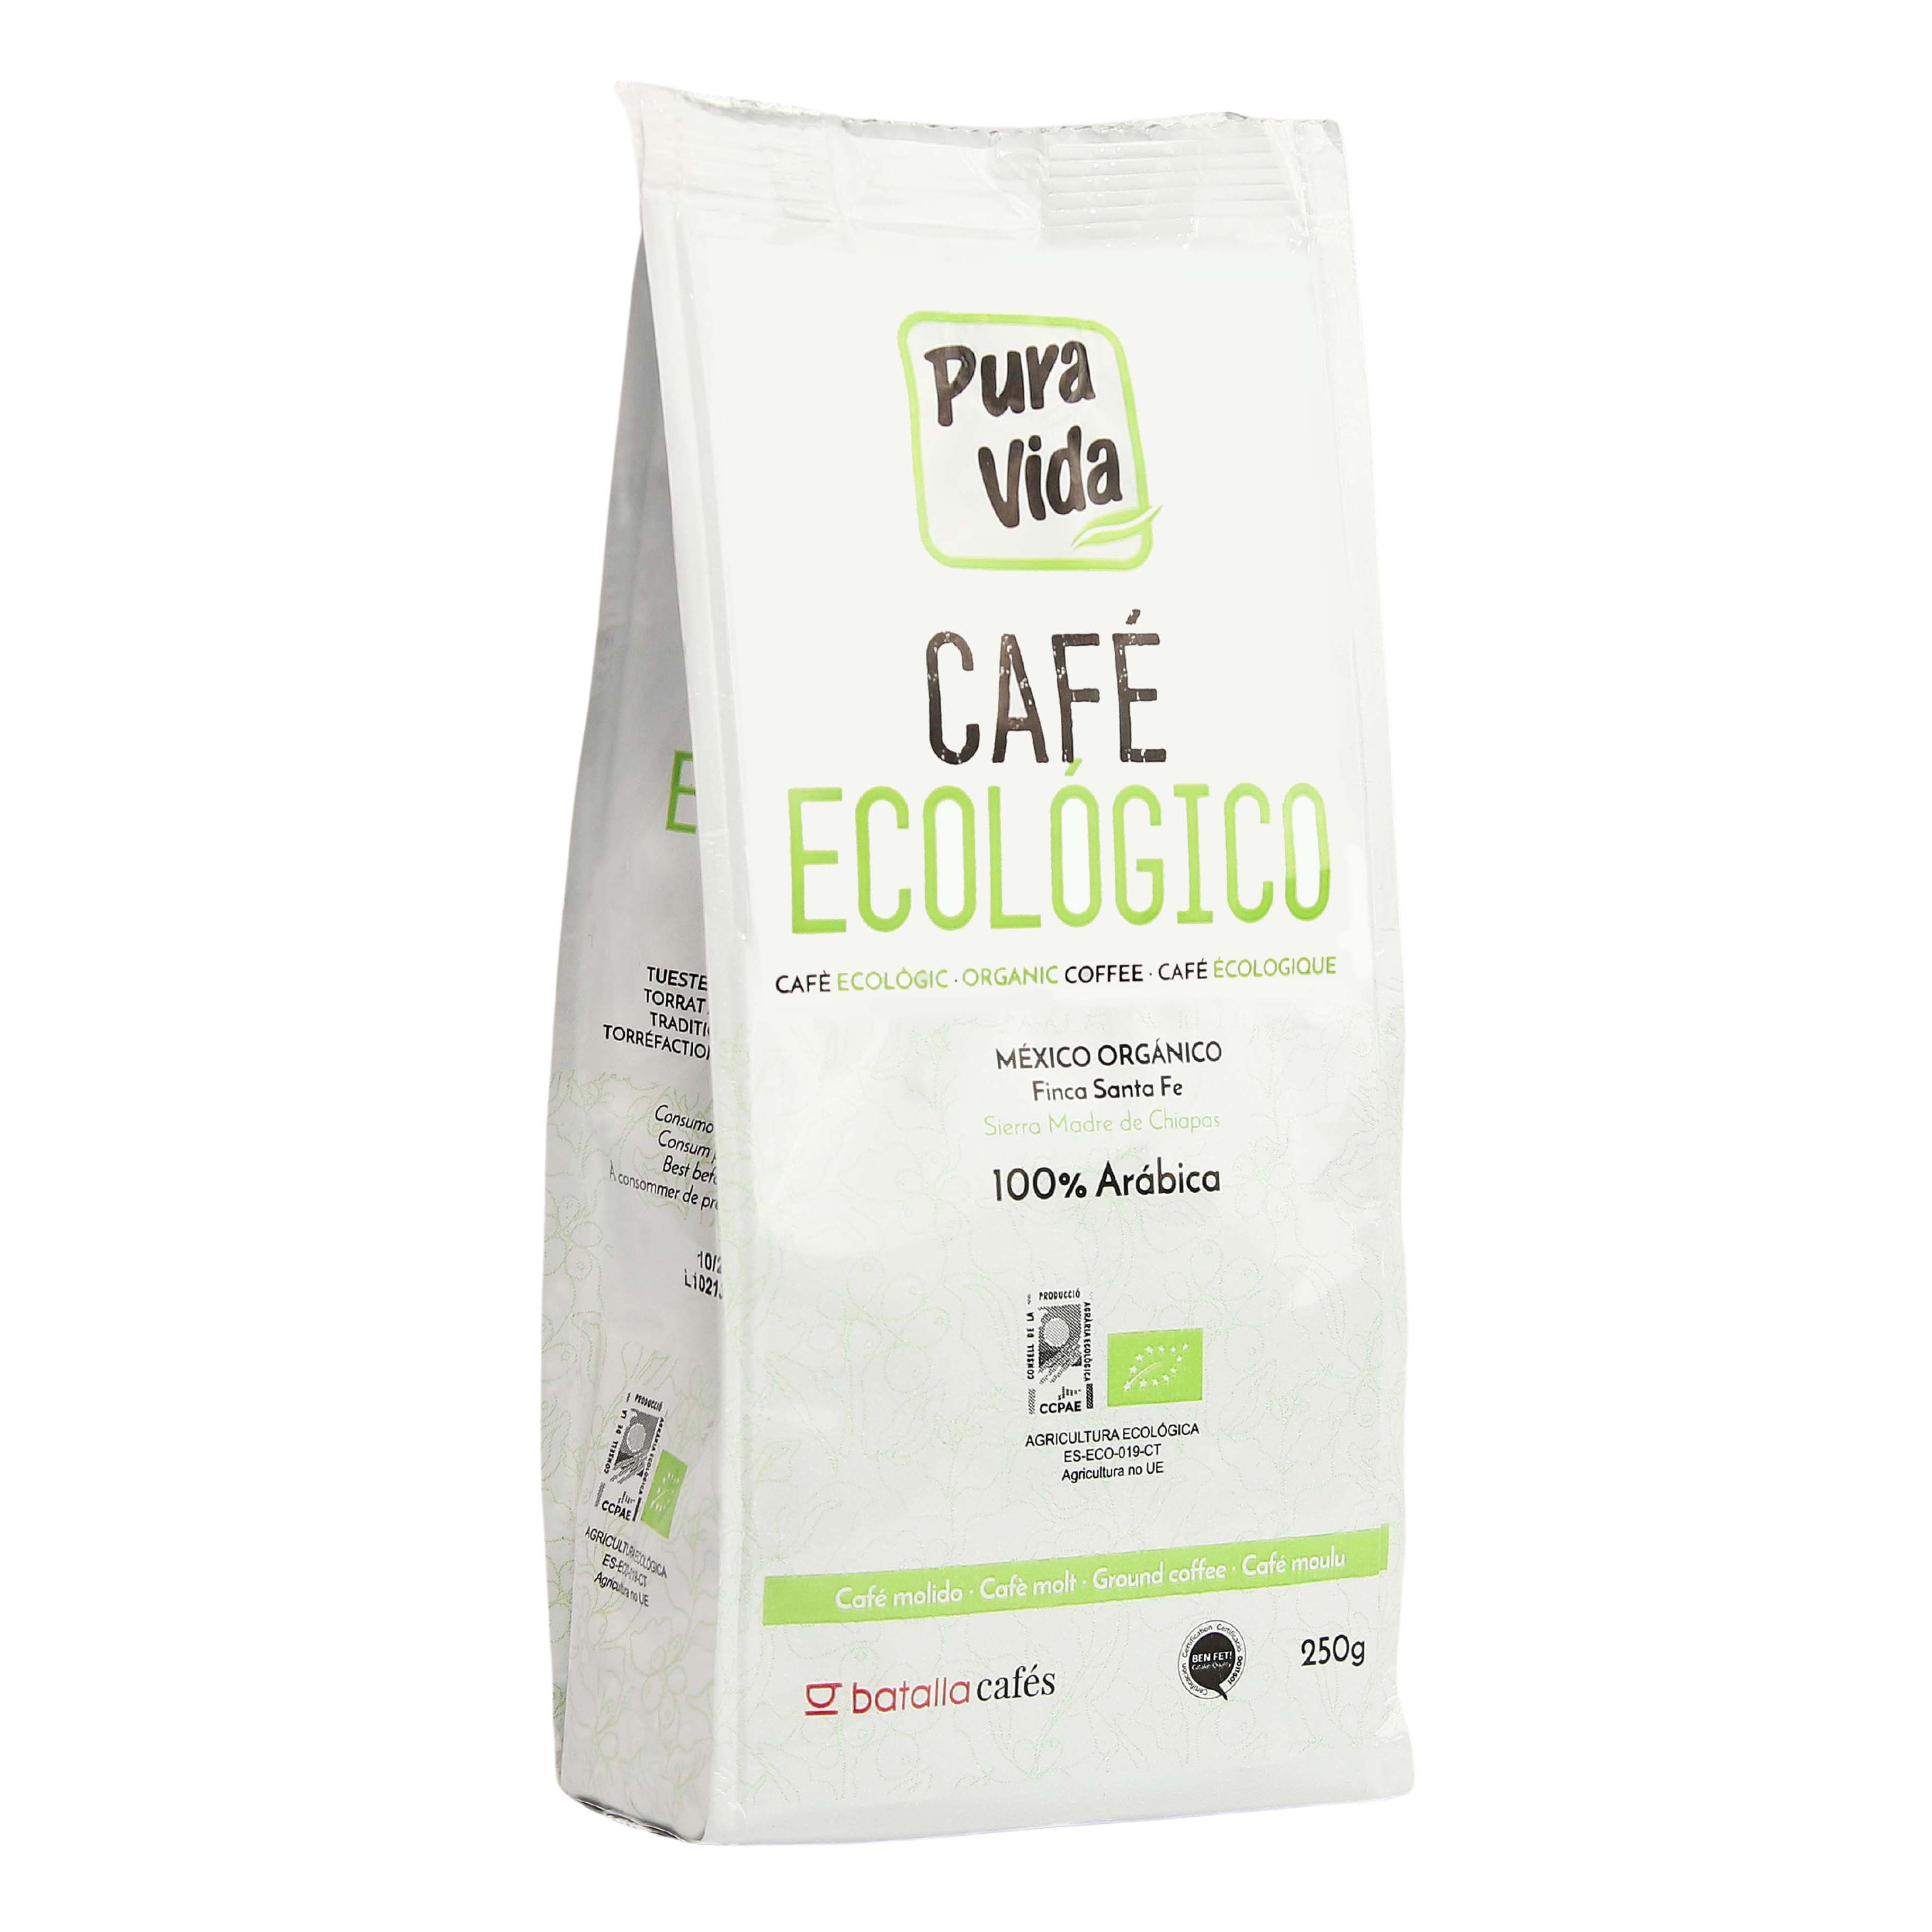 Alternativa3 Cafe en Grano de Colombia Eco, 1kg